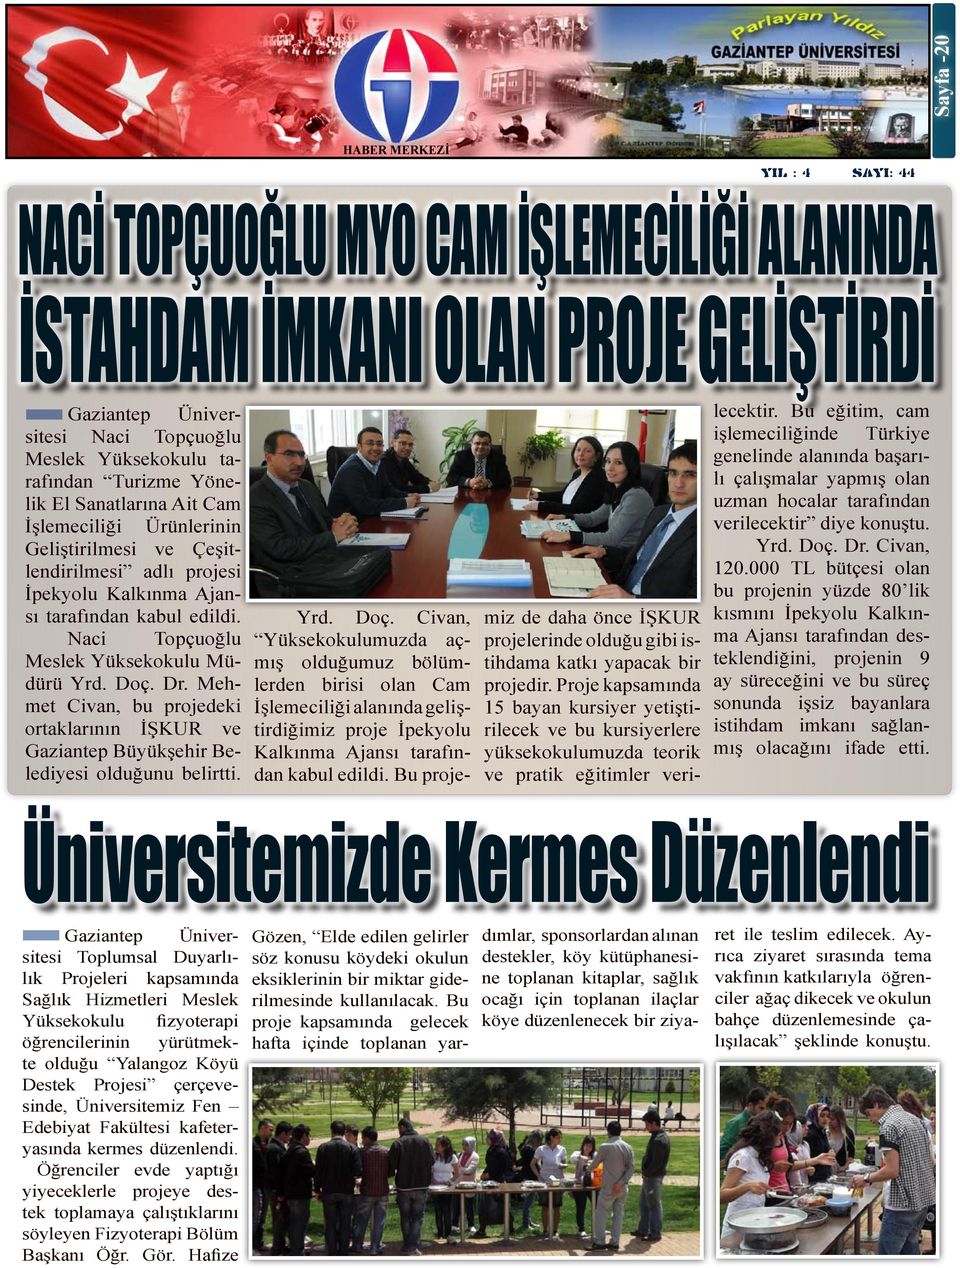 Mehmet Civan, bu projedeki ortaklarının İŞKUR ve Gaziantep Büyükşehir Belediyesi olduğunu belirtti. Yrd. Doç.